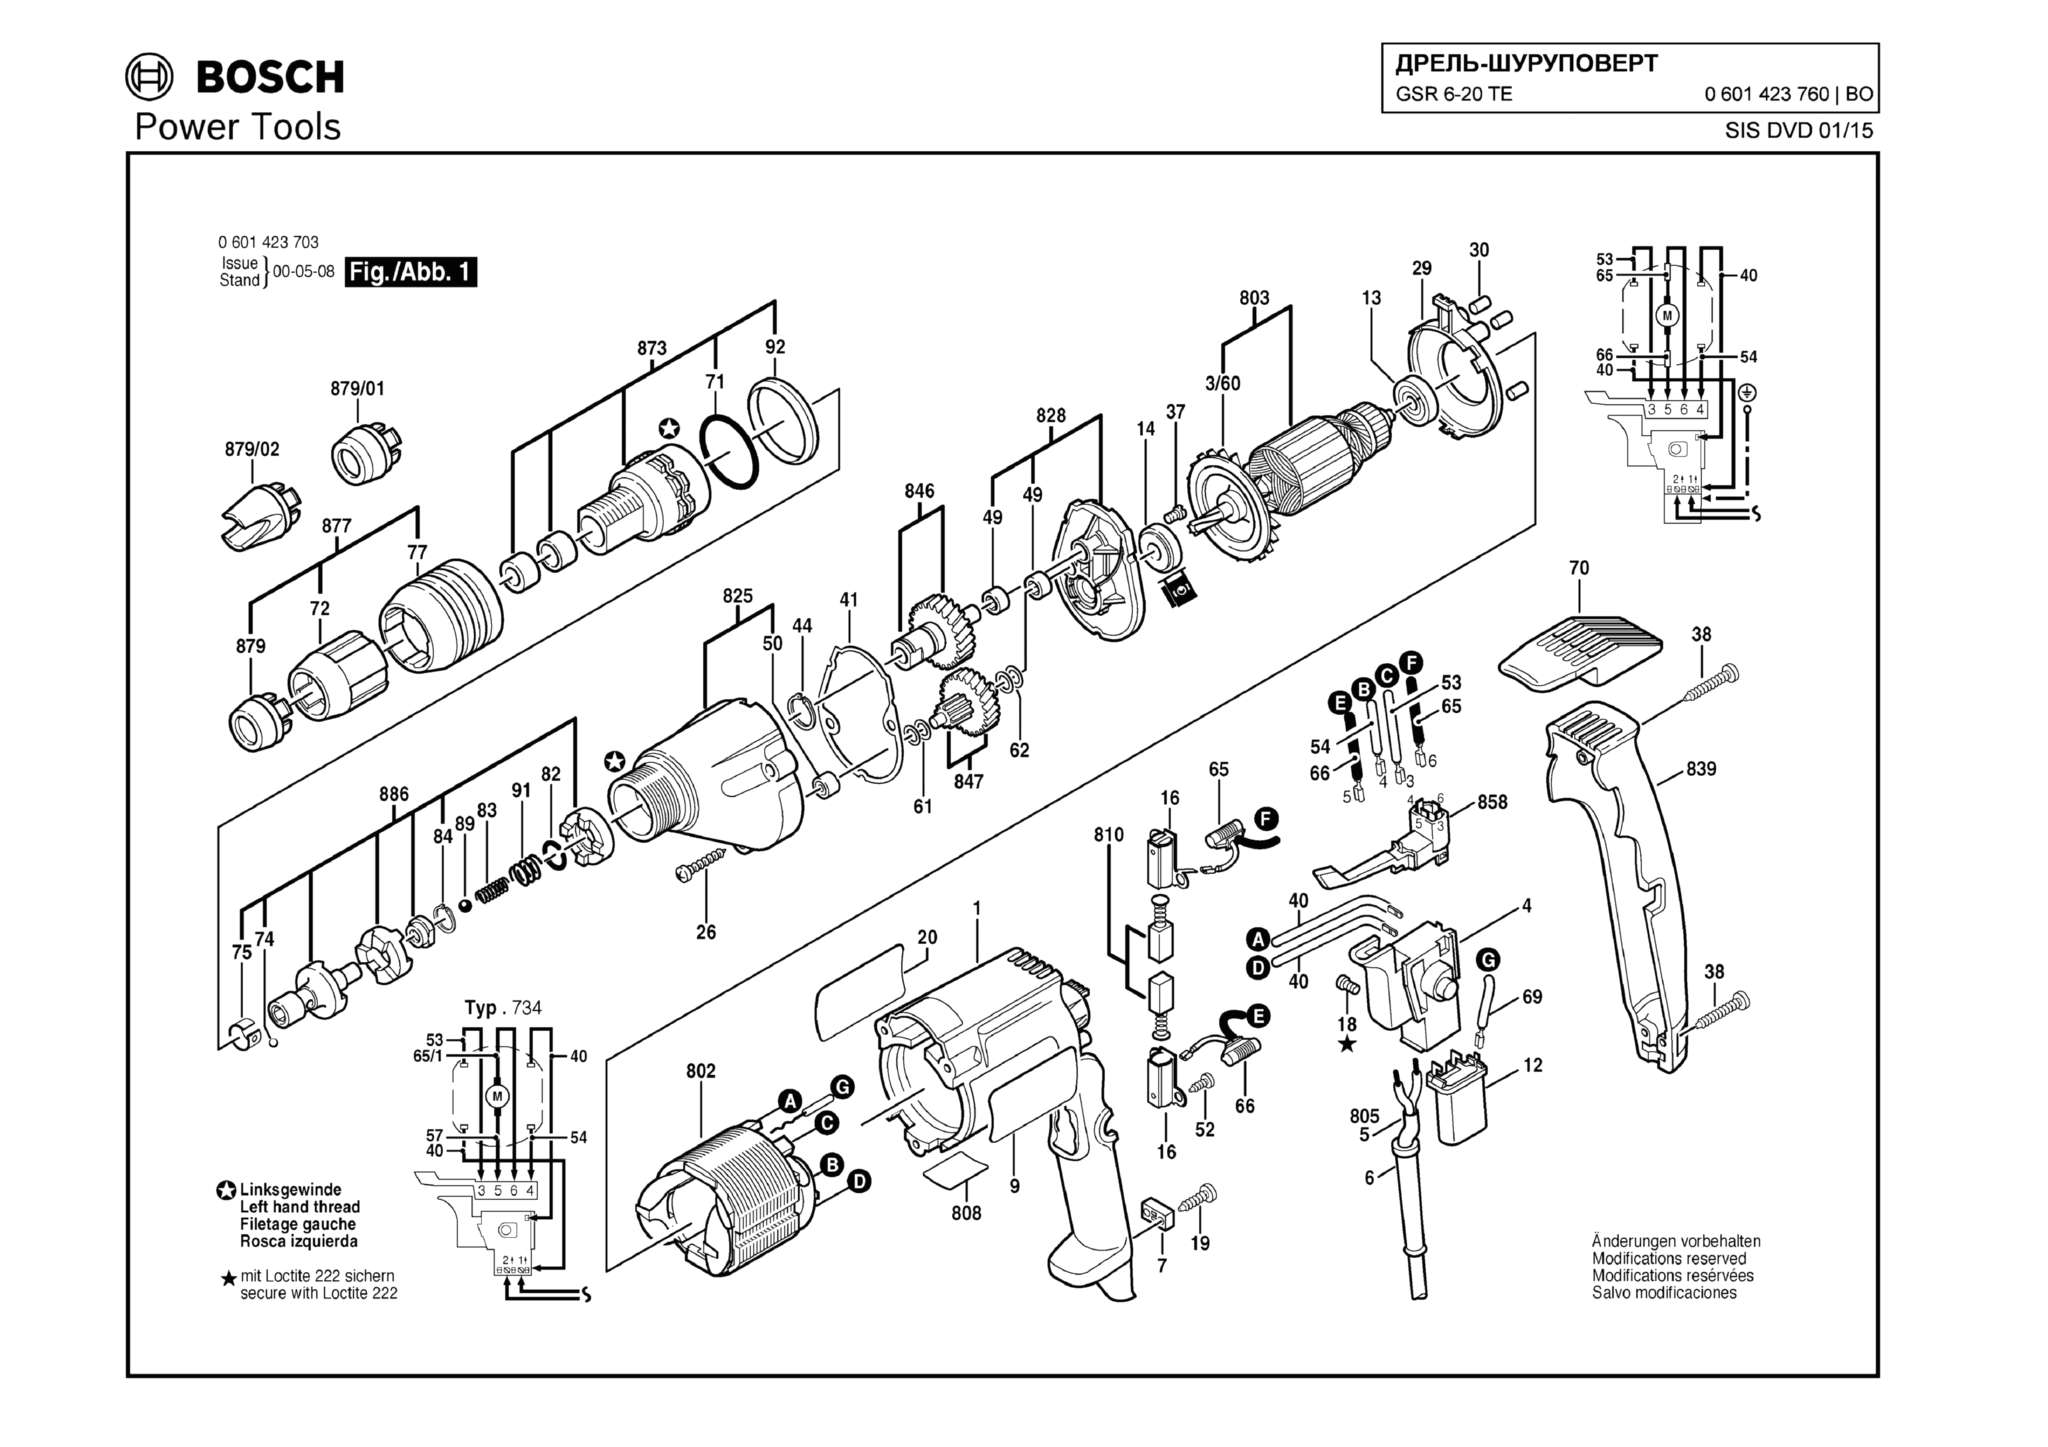 Запчасти, схема и деталировка Bosch GSR 6-20 TE (ТИП 0601423760)